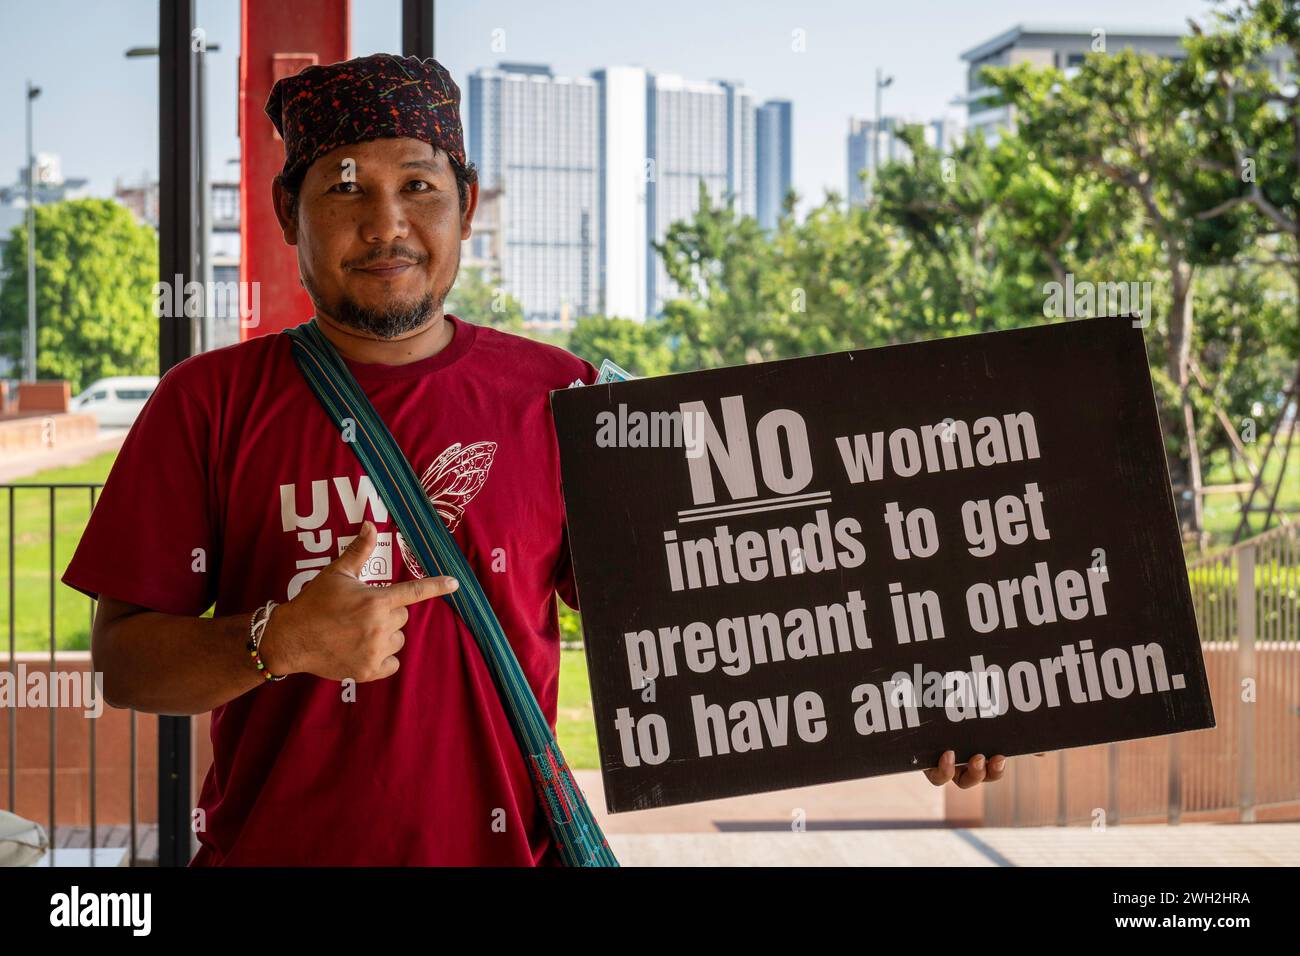 Ein thailändischer männlicher Aktivist sah mit einem Plakat über Abtreibung in Thailand, das im Land legal ist, aber selten in öffentlichen Krankenhäusern angewendet wird, im Parlament von Thailand. Trotz der Legalisierung von Abtreibungen in Thailand vor drei Jahren bleibt der Zugang zu kostenlosen und sicheren Abtreibungsdiensten für Frauen im Land eine Herausforderung. Die Freiwilligengruppe Tamtang, die sich lange Zeit für das Recht der Frauen auf sichere Abtreibung einsetzte, hat Dr. Thosaporn Serirak, dem Vorsitzenden der Public Health Commission, einen Brief vorgelegt, in dem das Ministerium für öffentliche Gesundheit aufgefordert wird, universelle Schwangerschaftsabbrüche bereitzustellen Stockfoto